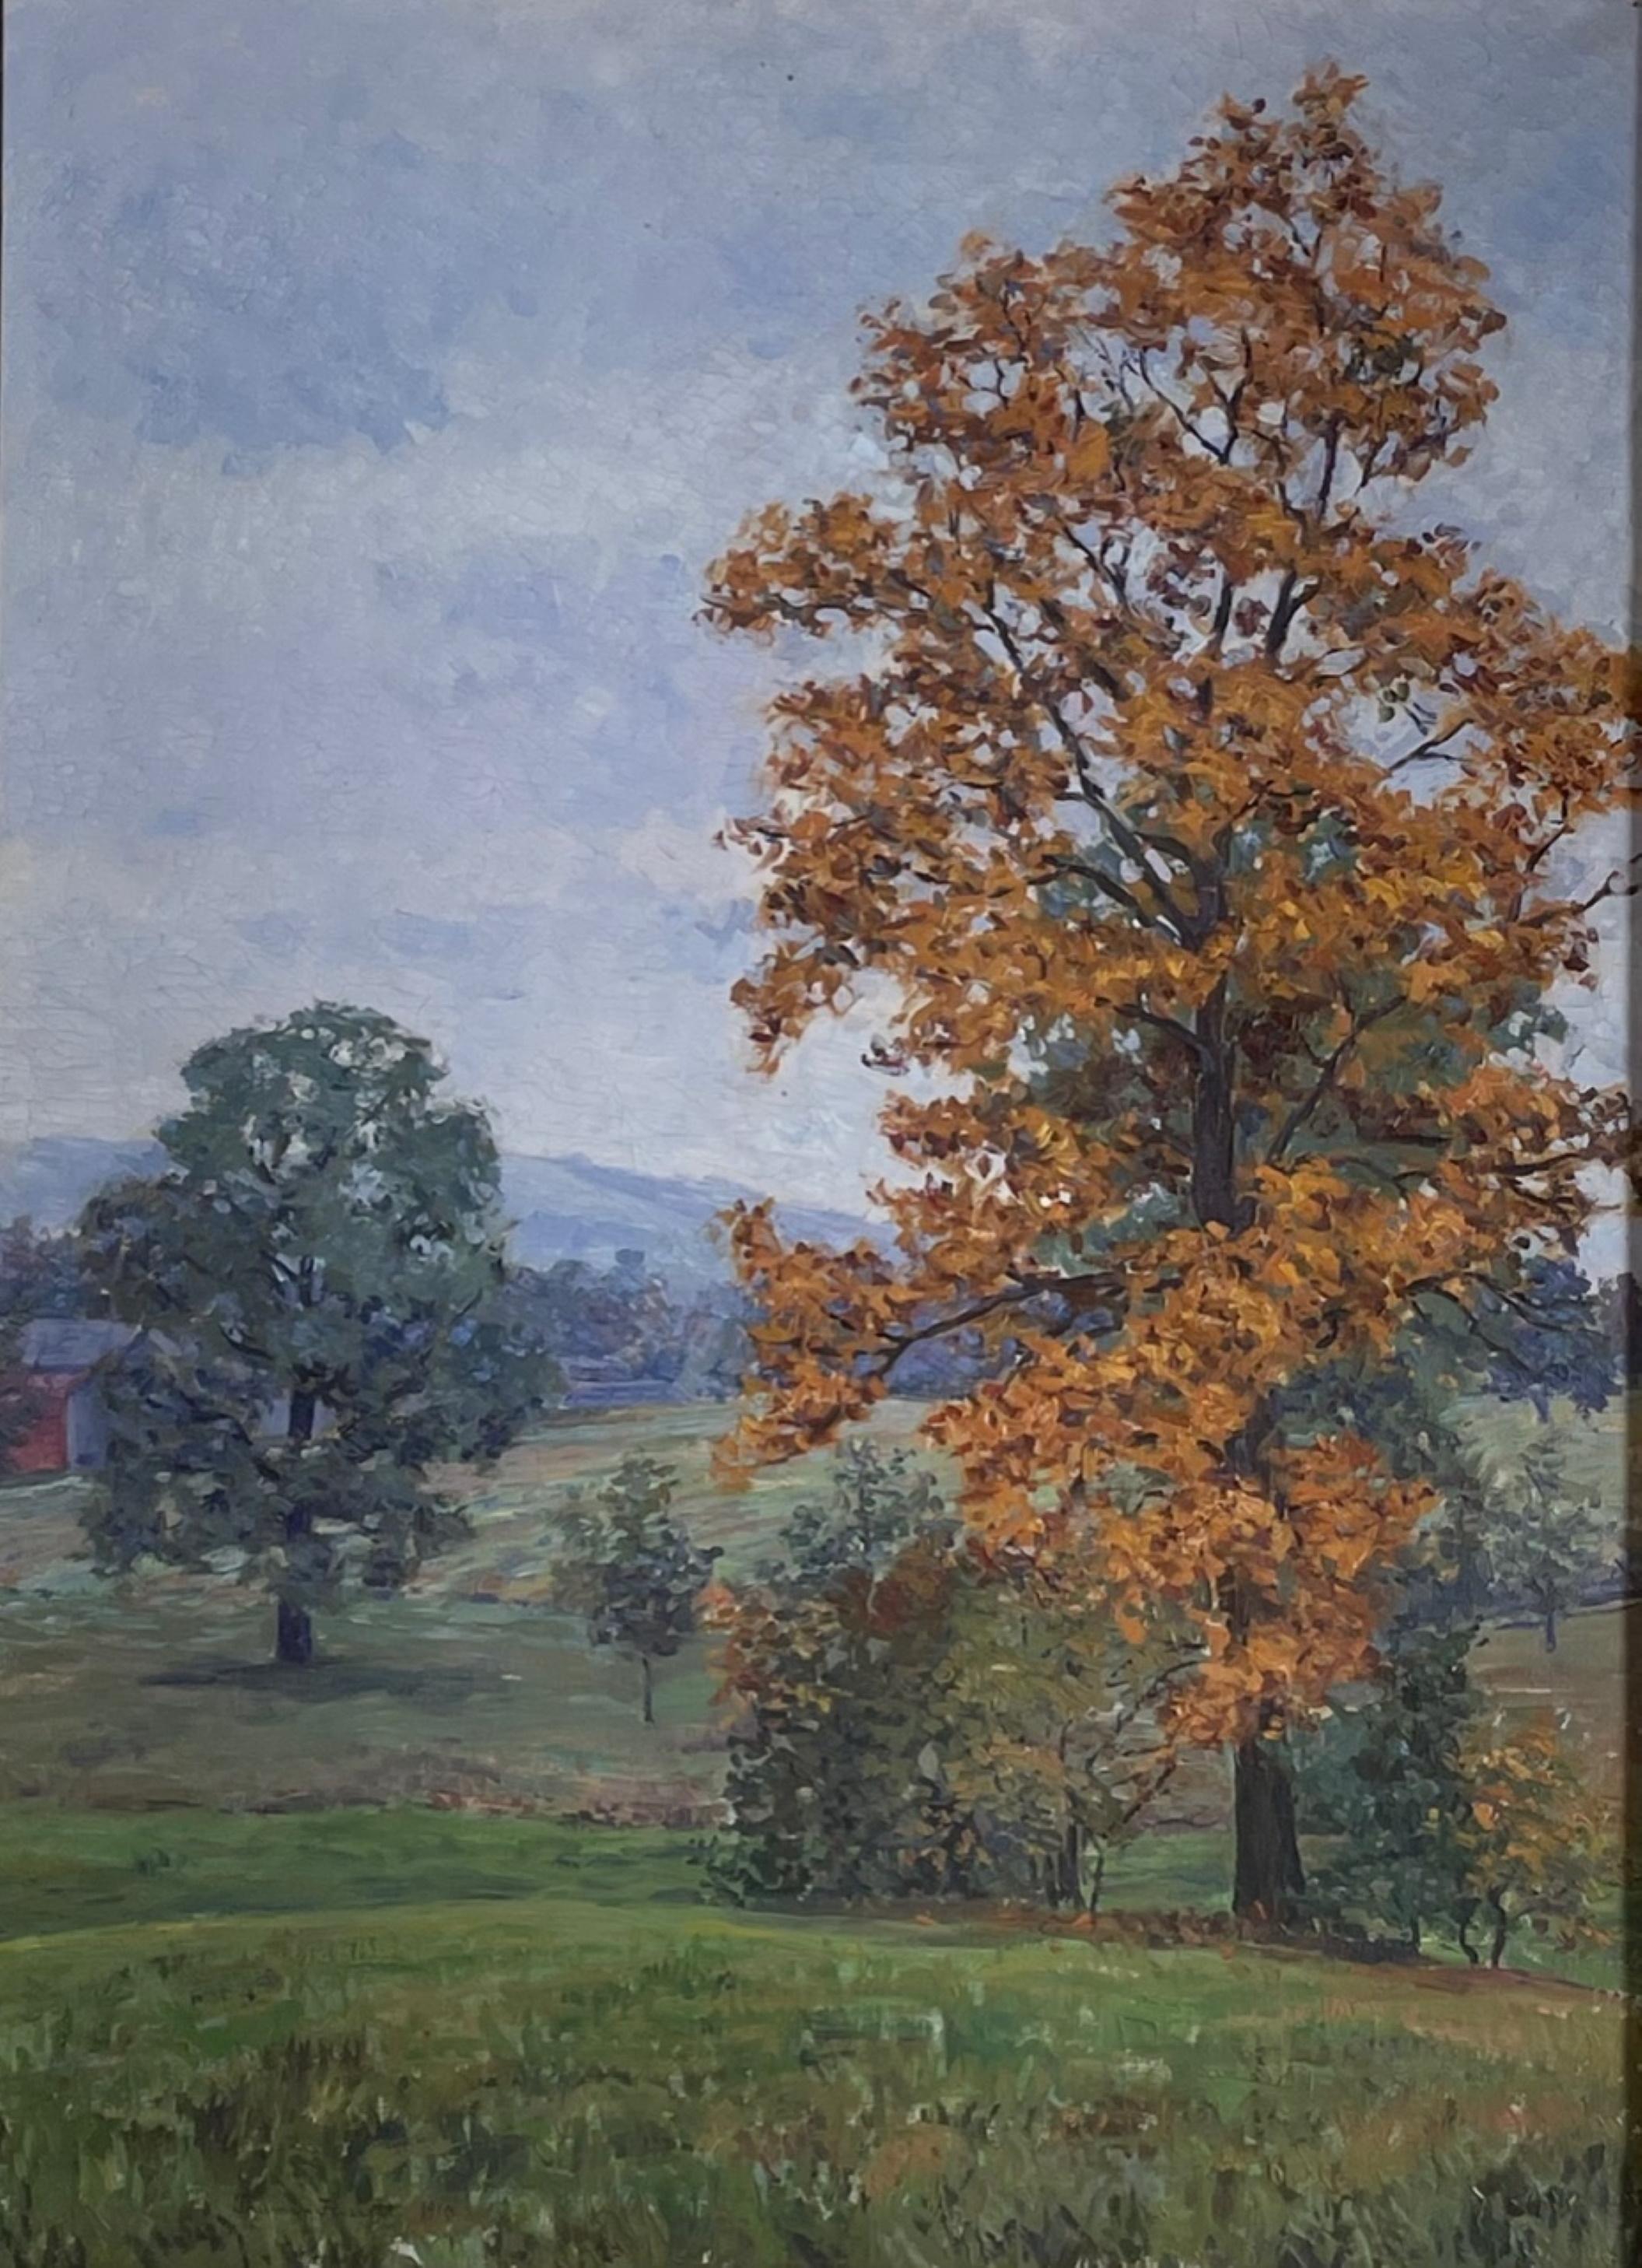 Vintage Hudson Valley New York peinture à l'huile dans un cadre Newcomb Macklin

Peinture romantique et lunatique de paysage d'automne, huile sur toile signée par Truman Edmund Fassett et datée de 1910. Fassett, artiste new-yorkaise, est diplômée